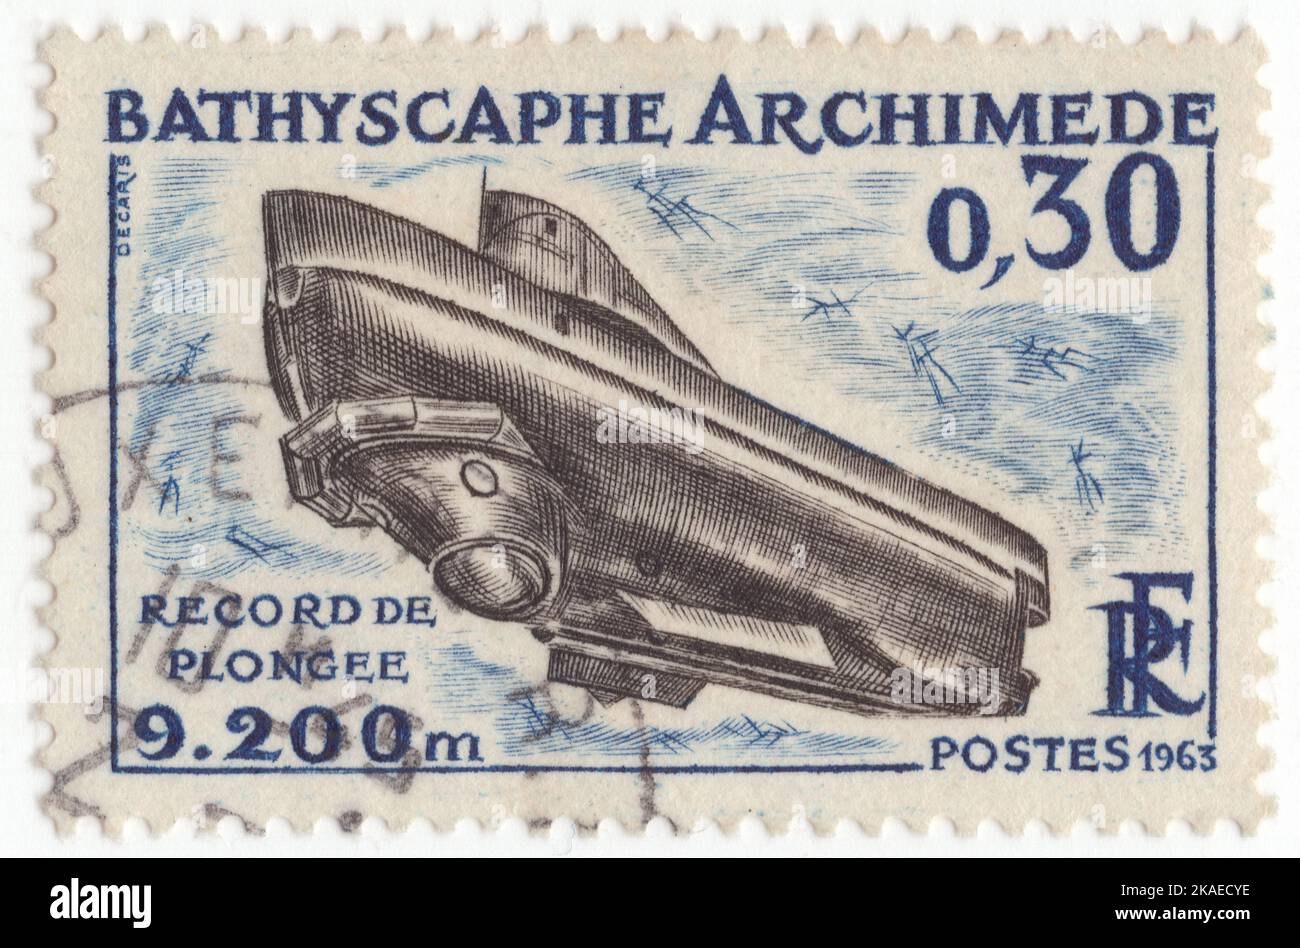 FRANKREICH - 1963. Januar 26: Eine dunkelblaue und schwarze Briefmarke mit 30 Rappen, die Bathyscaph „Archimede“ bei französischen Tiefseeforschungen darstellt. Tauchforschung tauchfähig der französischen Marine. Es verwendete 42.000 US Gallonen (160.000 L) Hexan als Auftrieb des Benzins seines Schwimmers. Es wurde von Pierre Willm und Georges Houot entworfen. Im Jahr 1964 stieg Archimède in den „tiefsten Teil des Puerto Rico-Grabens“, den die NY Times als 27.500 Fuß (8.400 m) meldete. Stockfoto